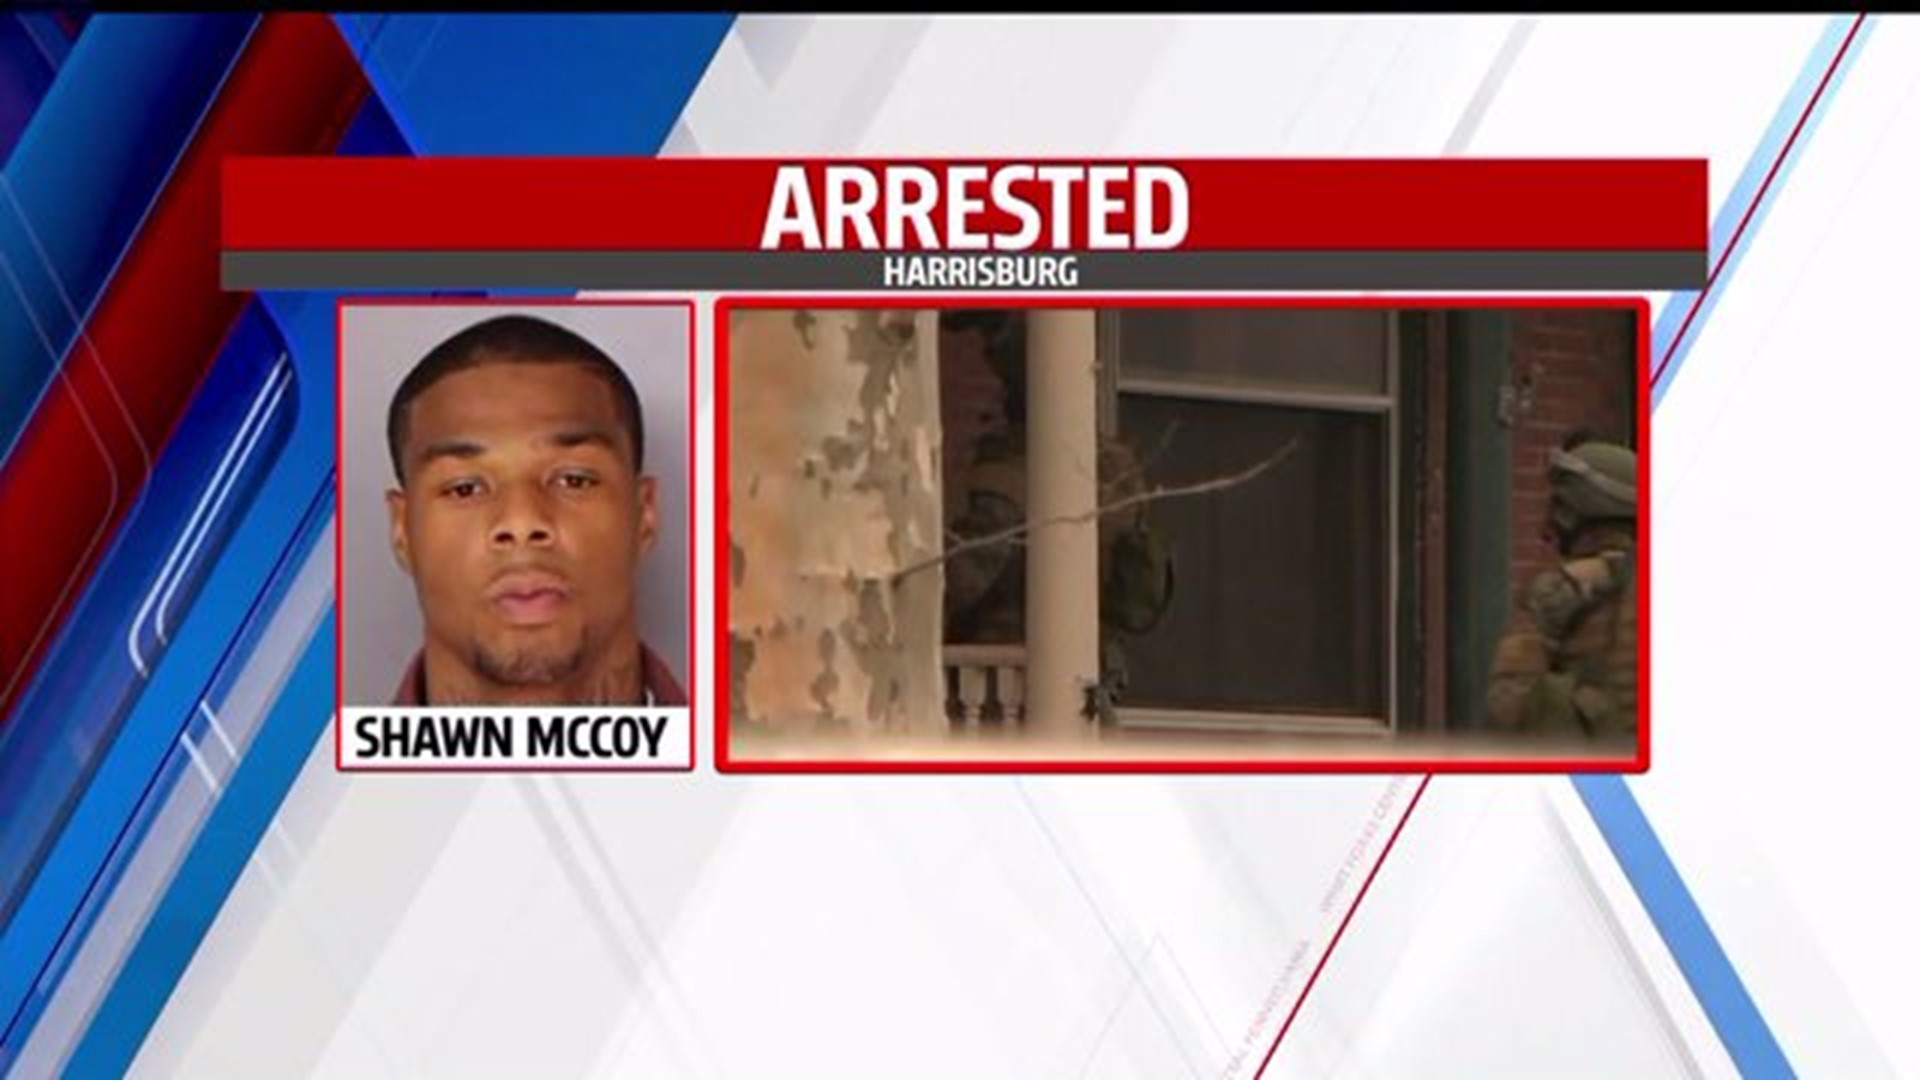 More information on Shawn McCoy arrest